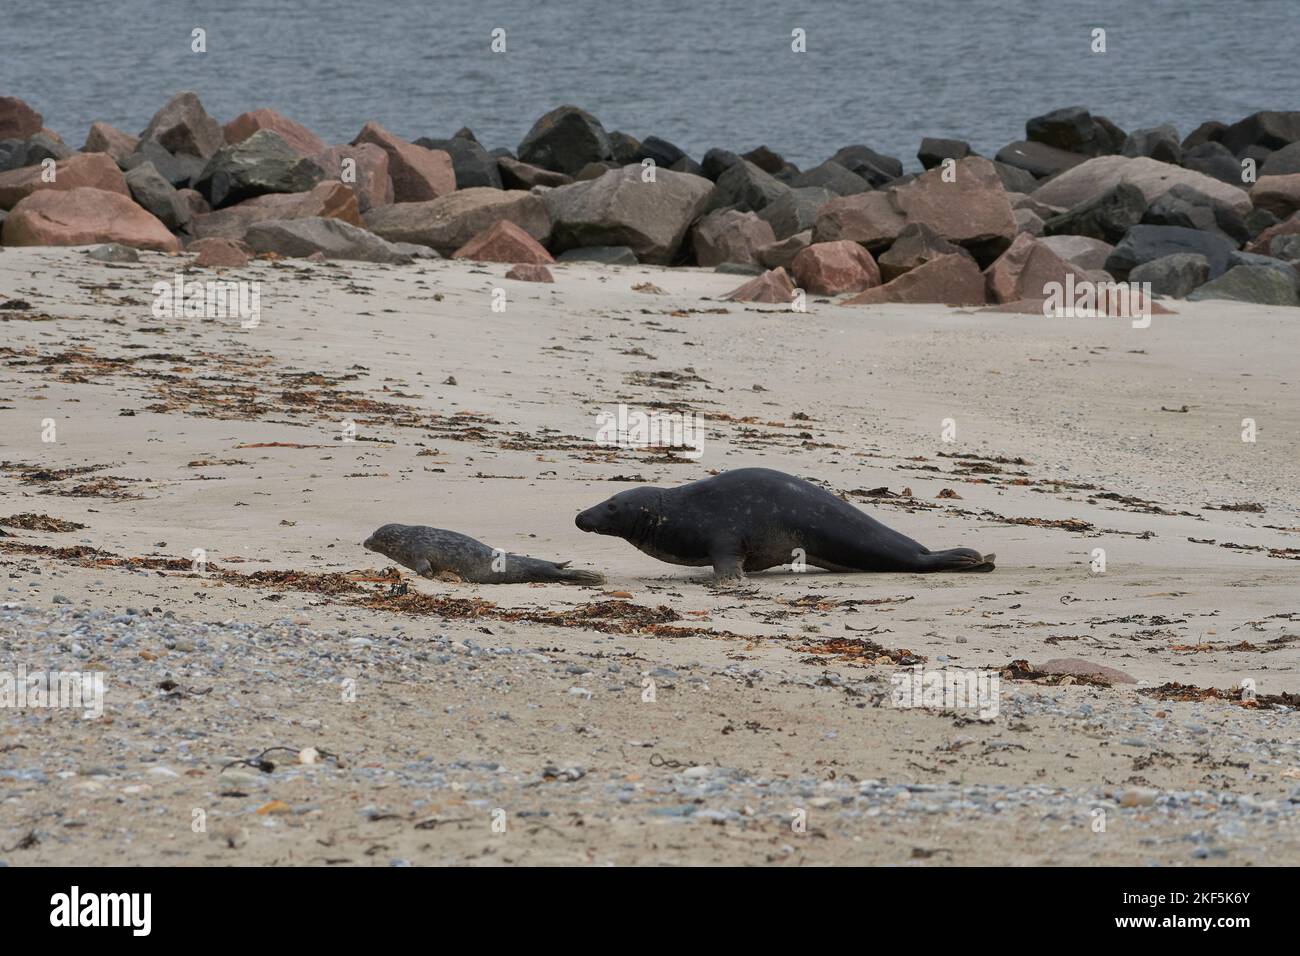 Grypus di Halichoerus, Kegelrobbe Bulle jagt Jungtier, toro di foca grigio che caccia a juvenil Foto Stock